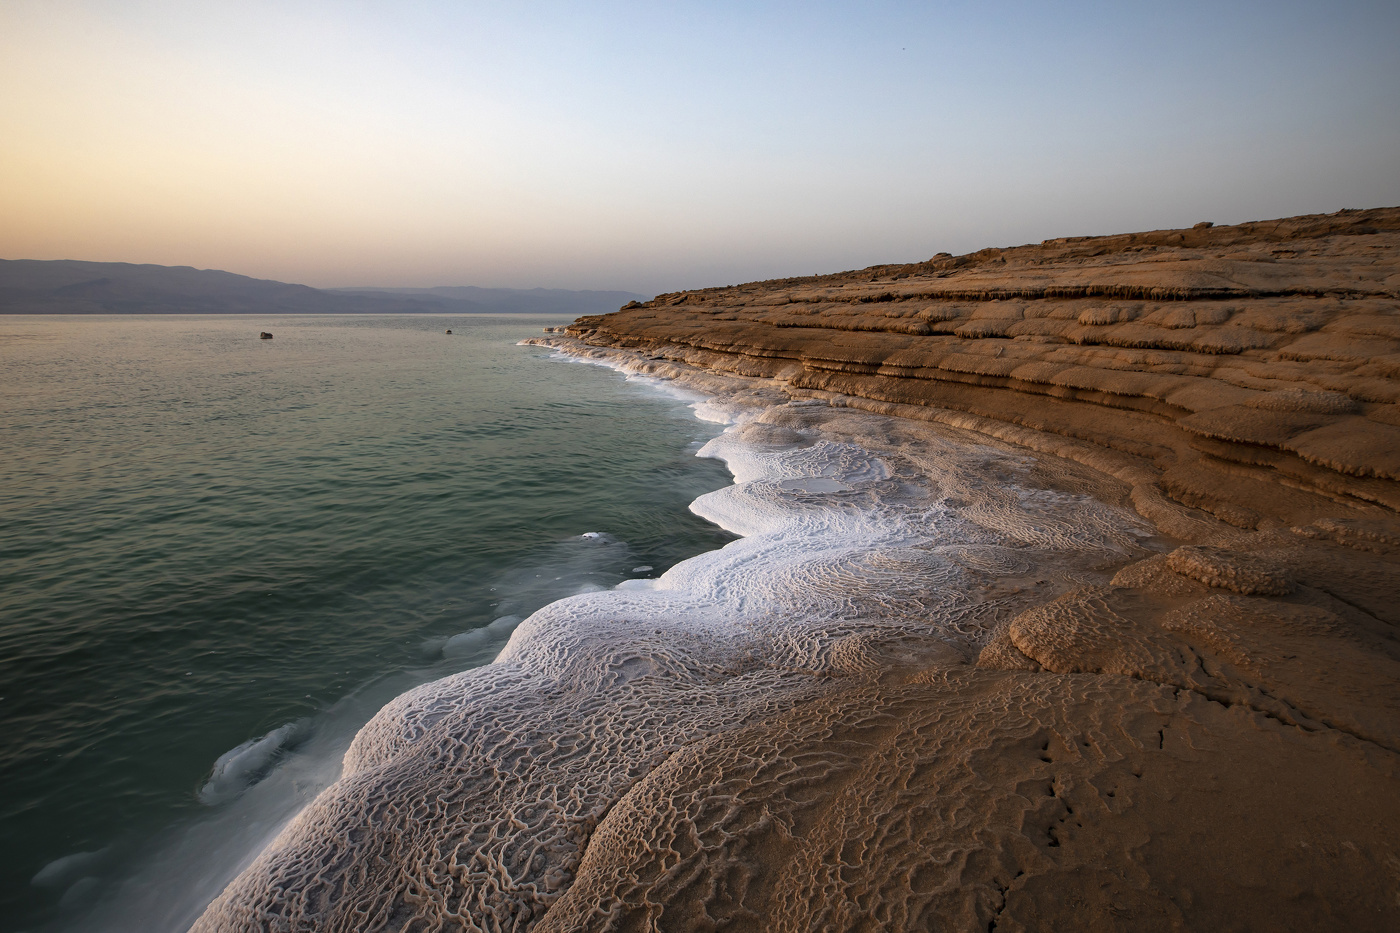 израили мертвое море